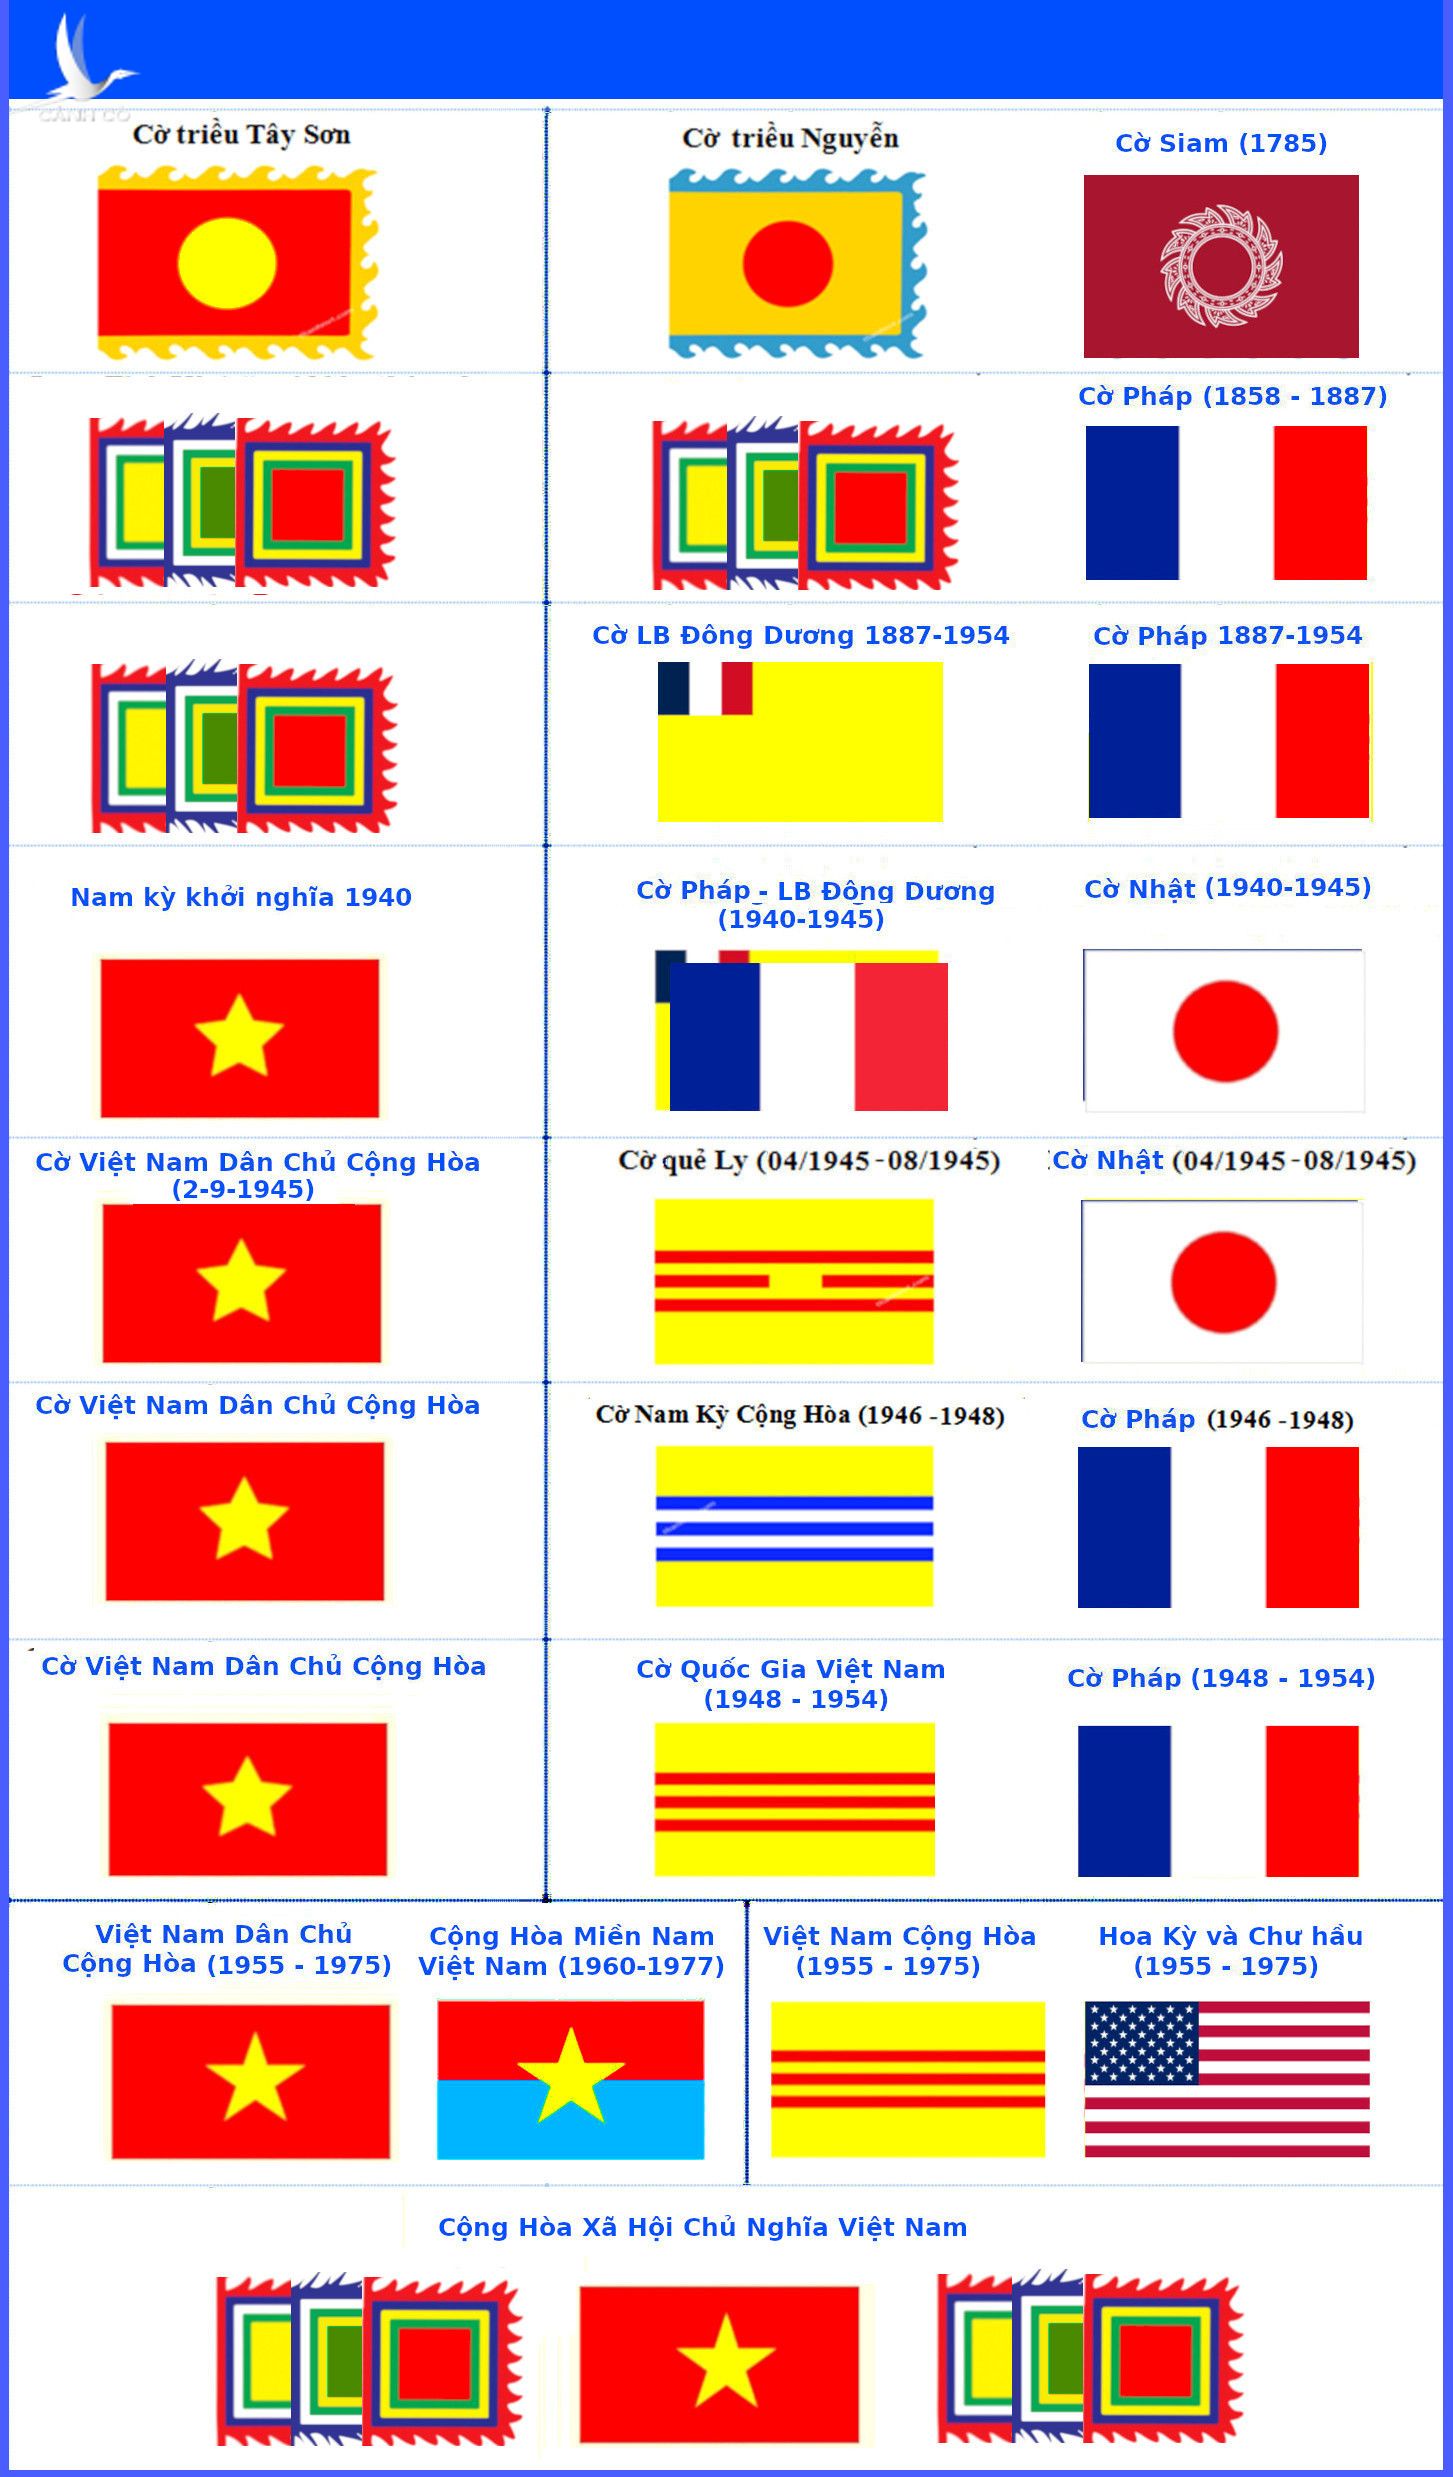 Thời kỳ cờ vàng ba sọc đỏ của Việt Nam Cộng hòa: Thế kỷ 20 đã chứng kiến sự phát triển của cờ Việt Nam, nhưng thời kỳ cờ vàng ba sọc đỏ của Việt Nam Cộng hòa là một trong những giai đoạn quan trọng nhất. Với màu sắc tươi sáng và ý nghĩa đặc biệt, cờ này đã trở thành biểu tượng cho sự kiên cường và đấu tranh của dân tộc. Hãy đến với những hình ảnh độc đáo để tìm hiểu về thời kỳ này.